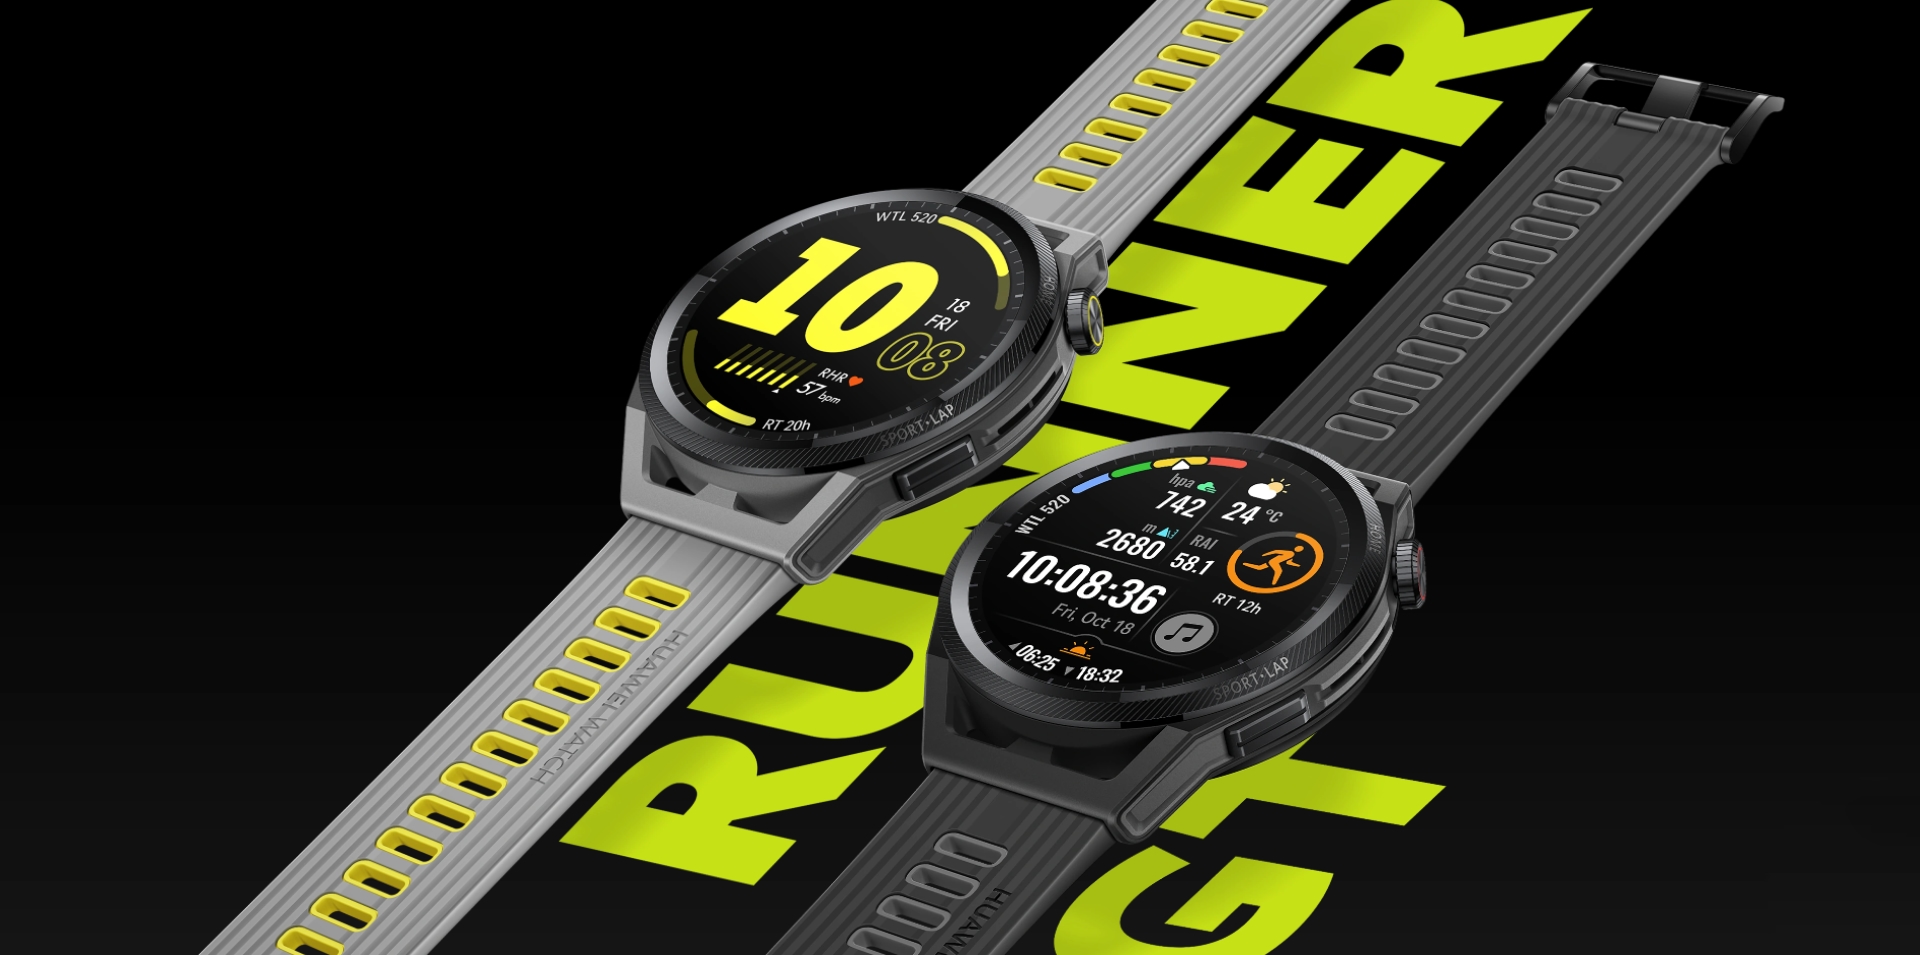 Huawei Watch GT Runner a fait ses débuts sur le marché international : une montre intelligente pour les coureurs pour 299 euros, également avec de jolis bonus